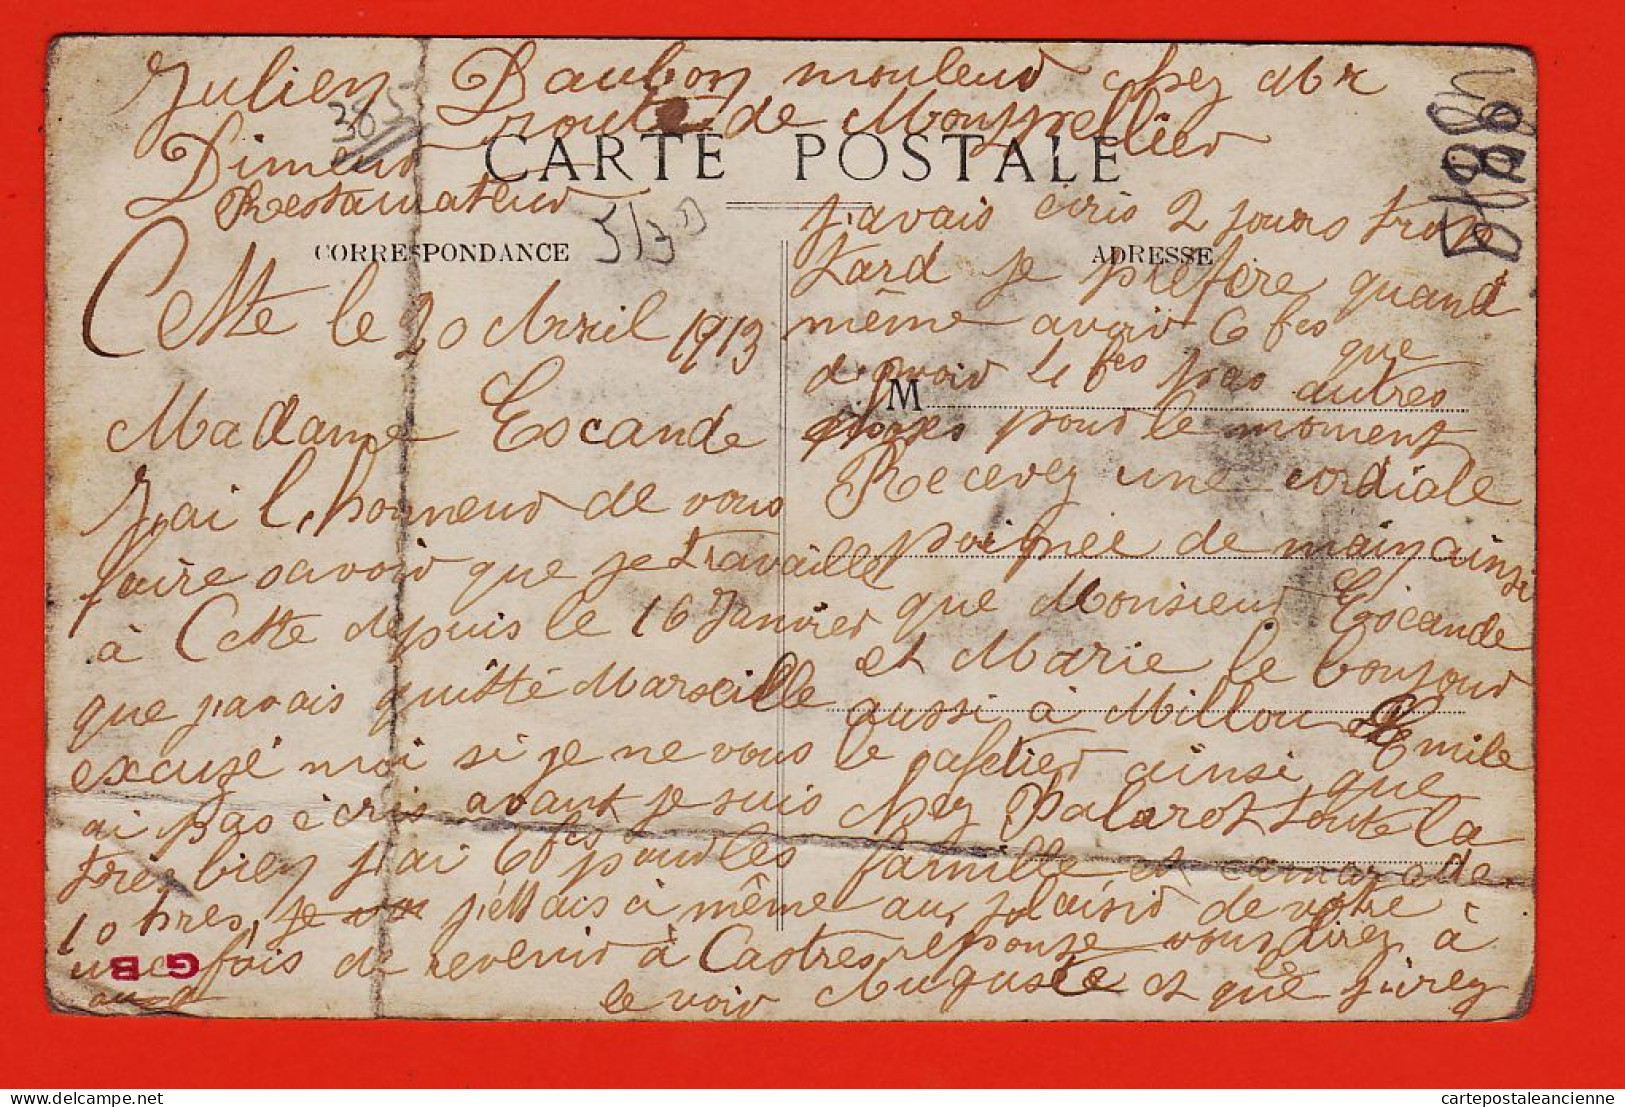 38542 / ⭐ Lisez 1913 De Julien DAUCHON Mouleur C DIMEUR Restaurateur à CETTE Quai BOSC Rue POSTES Montagne SAINT-CLAIR - Sete (Cette)